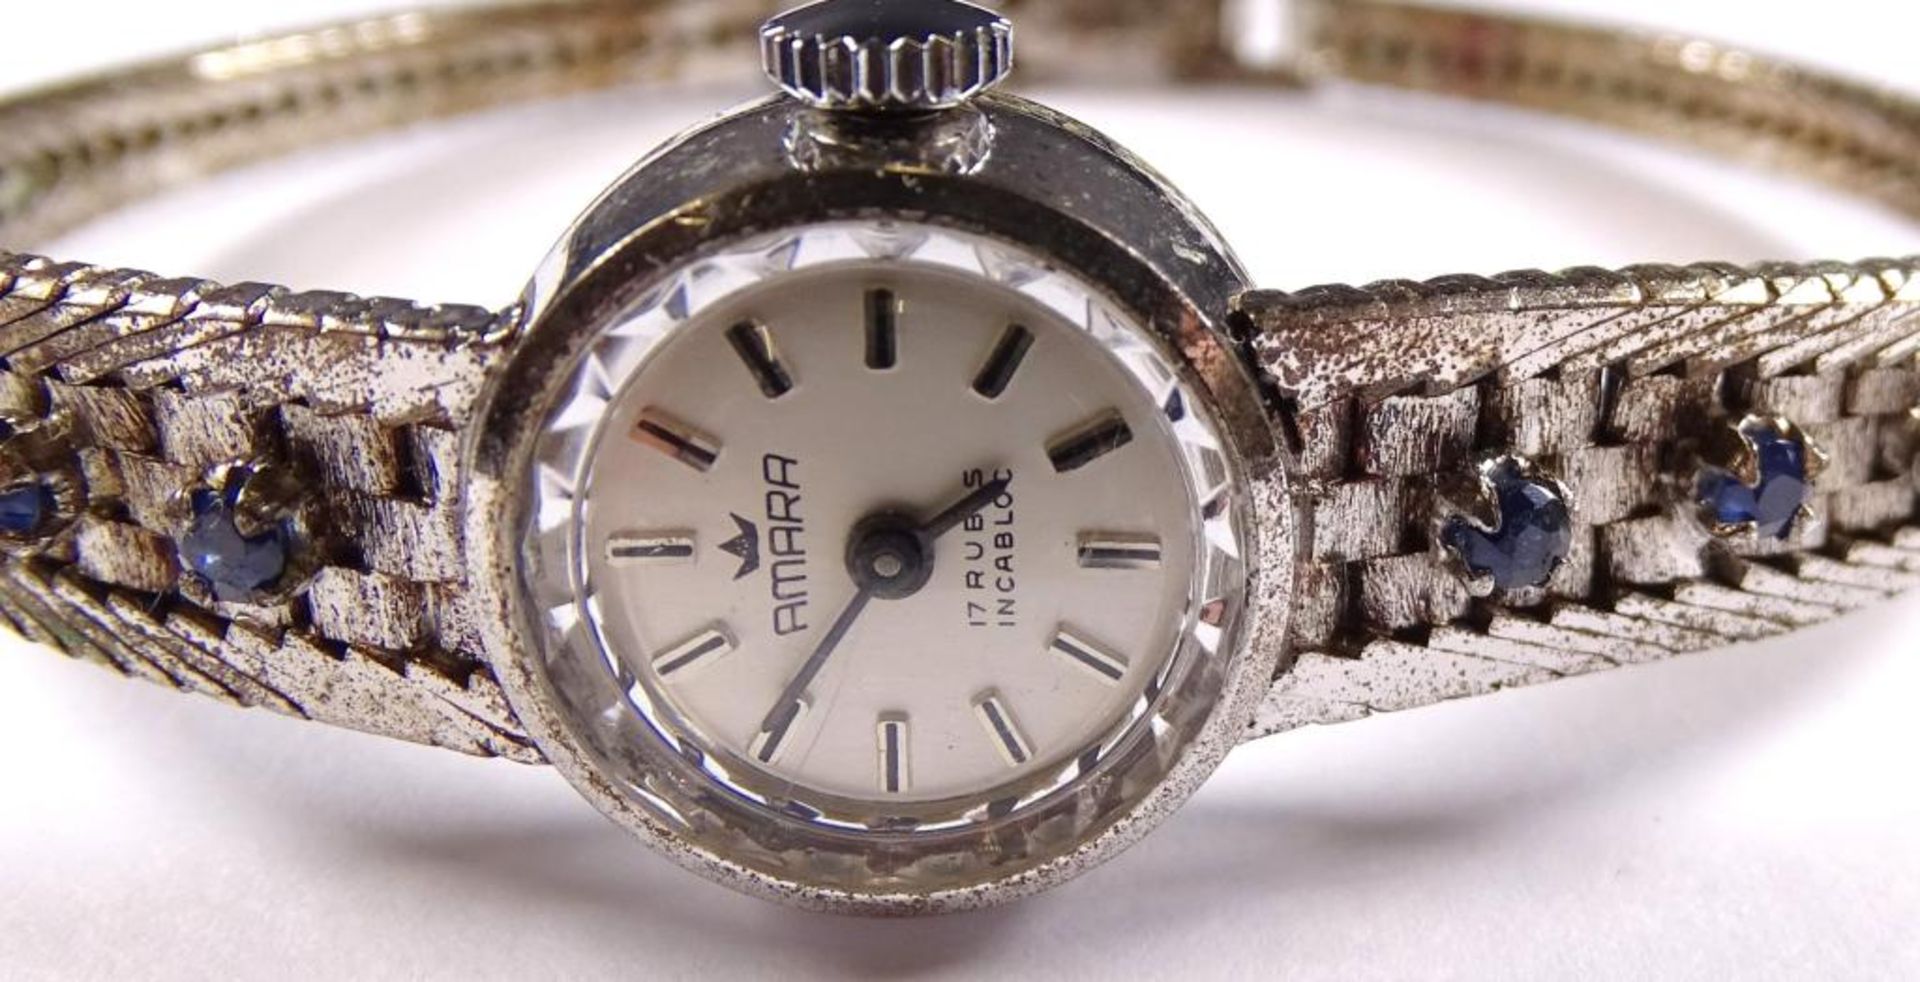 Damen Armbanduhr,"Amara",Handaufzug,Werk steht,Silber -835- besetzt mit Saphiren,ges.gew.20,8gr. - Bild 2 aus 4